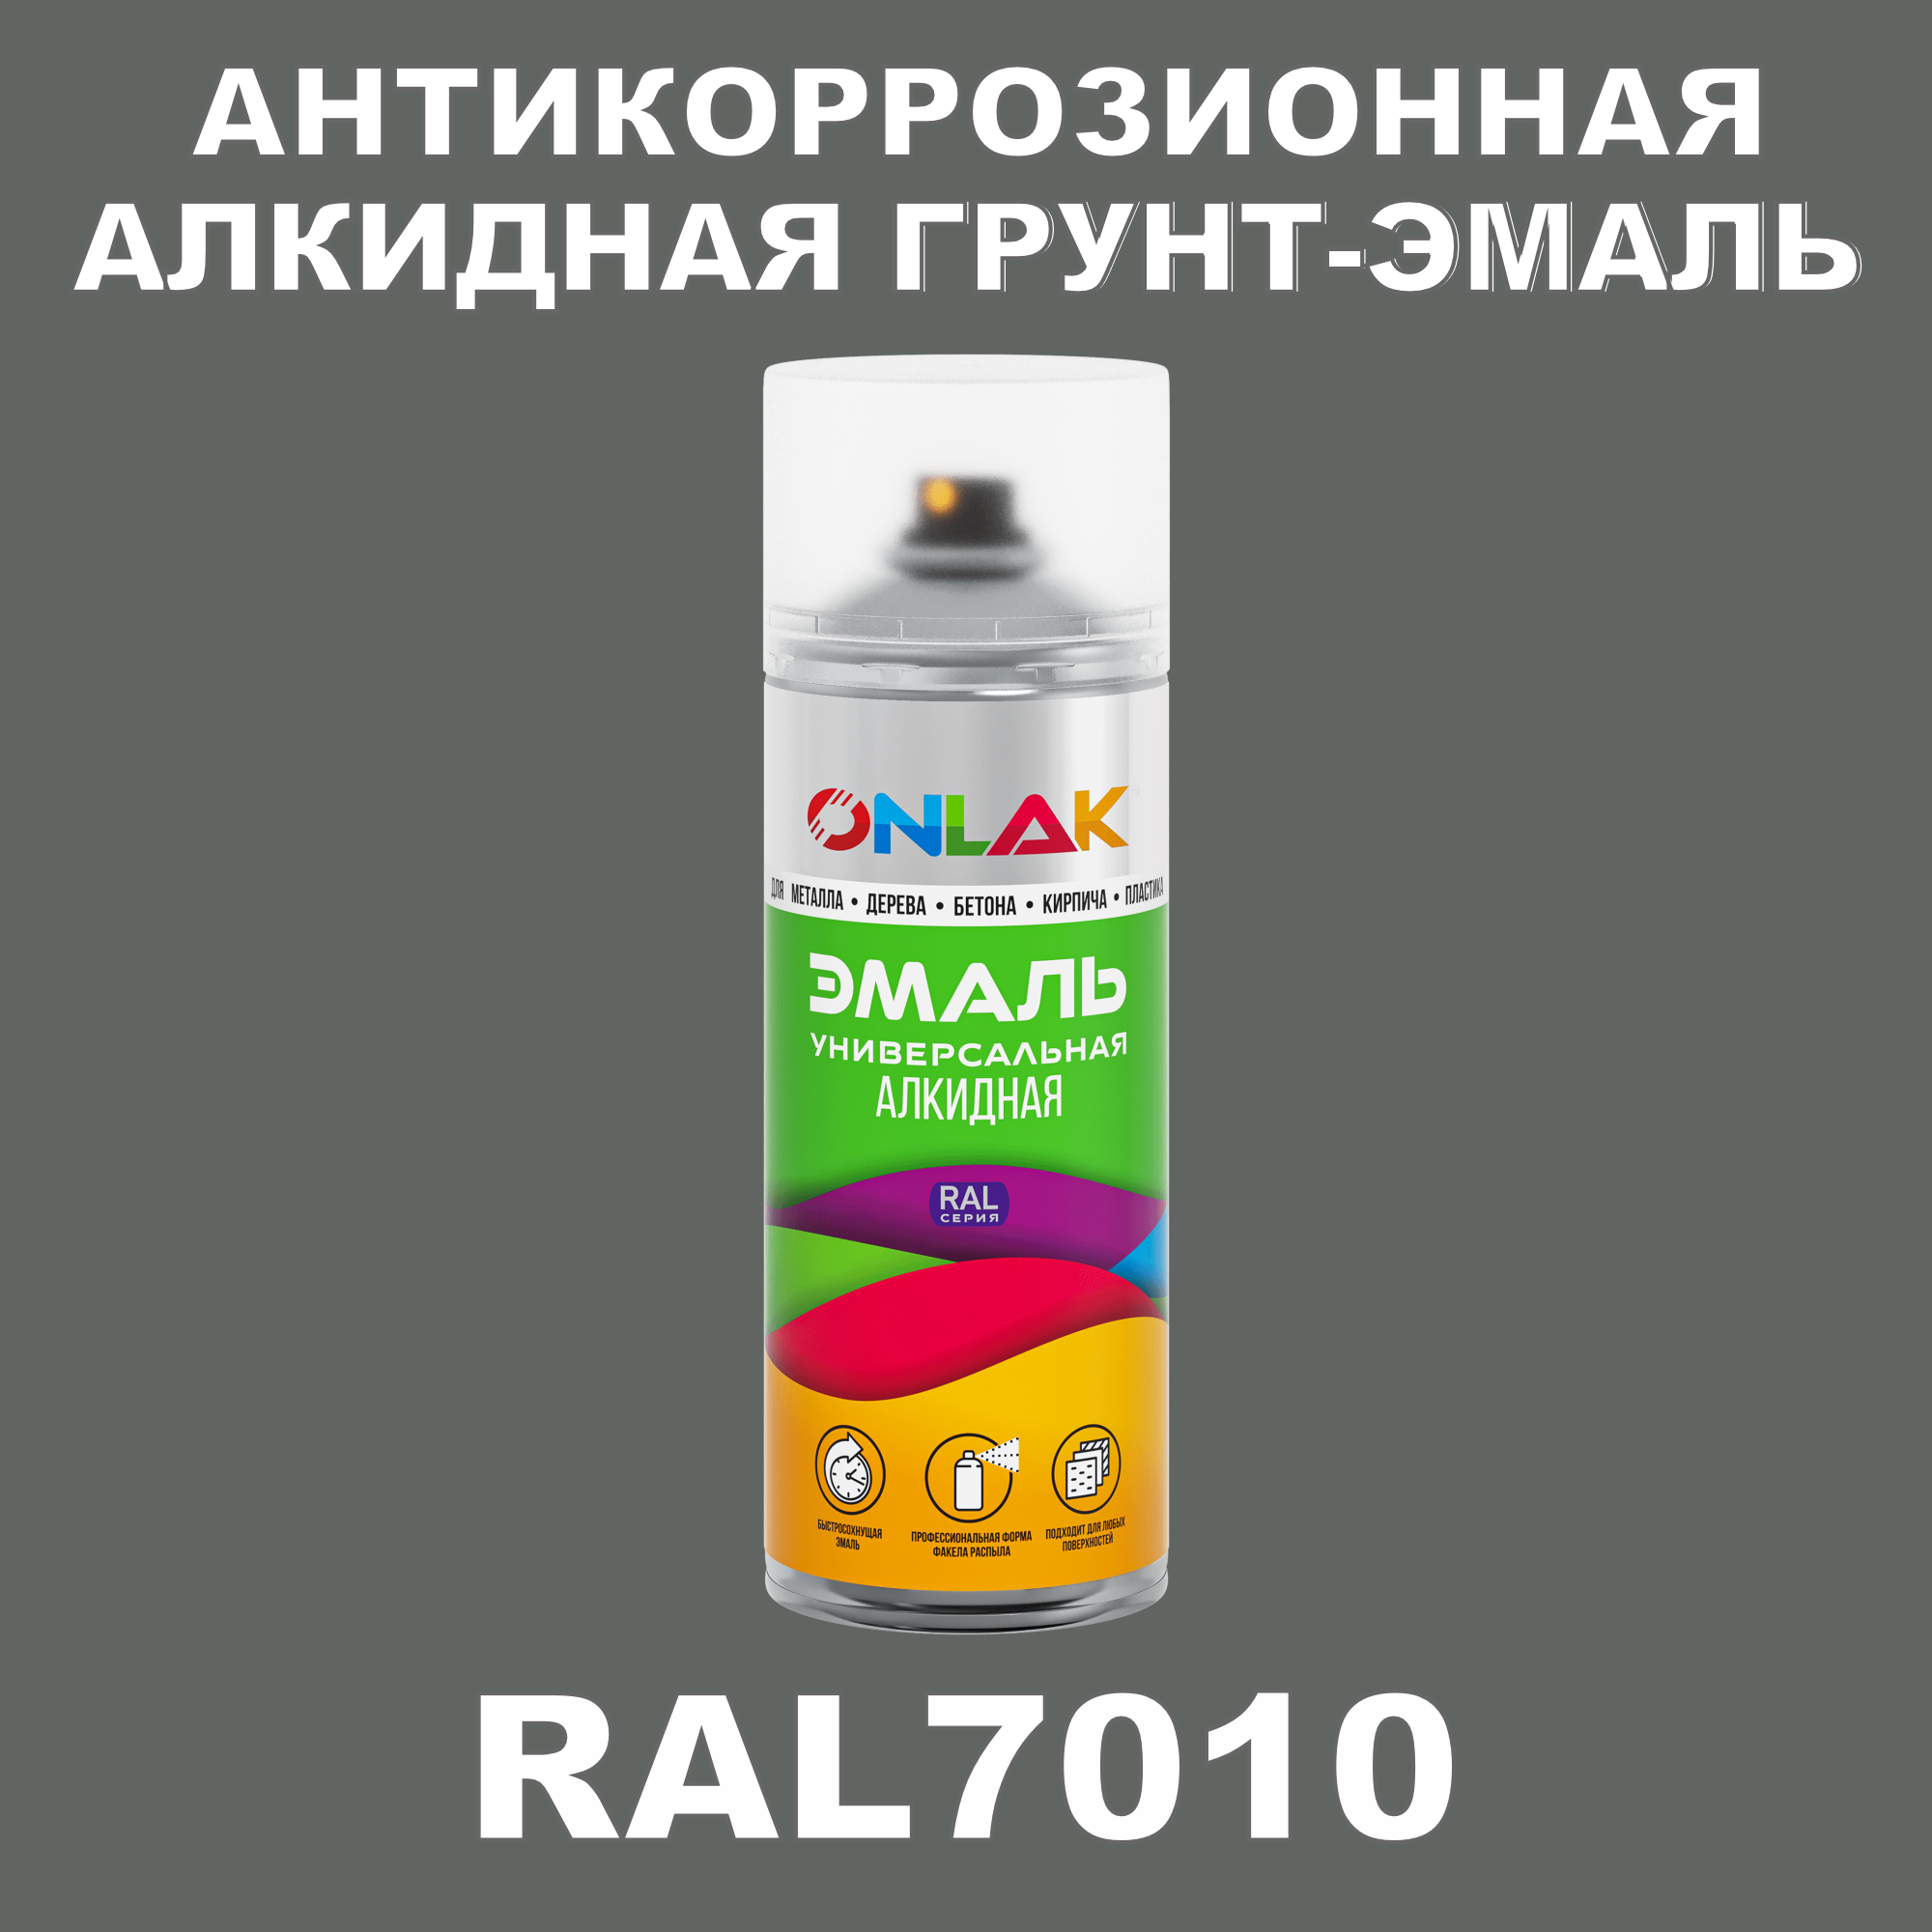 Антикоррозионная грунт-эмаль ONLAK RAL7010 полуматовая для металла и защиты от ржавчины